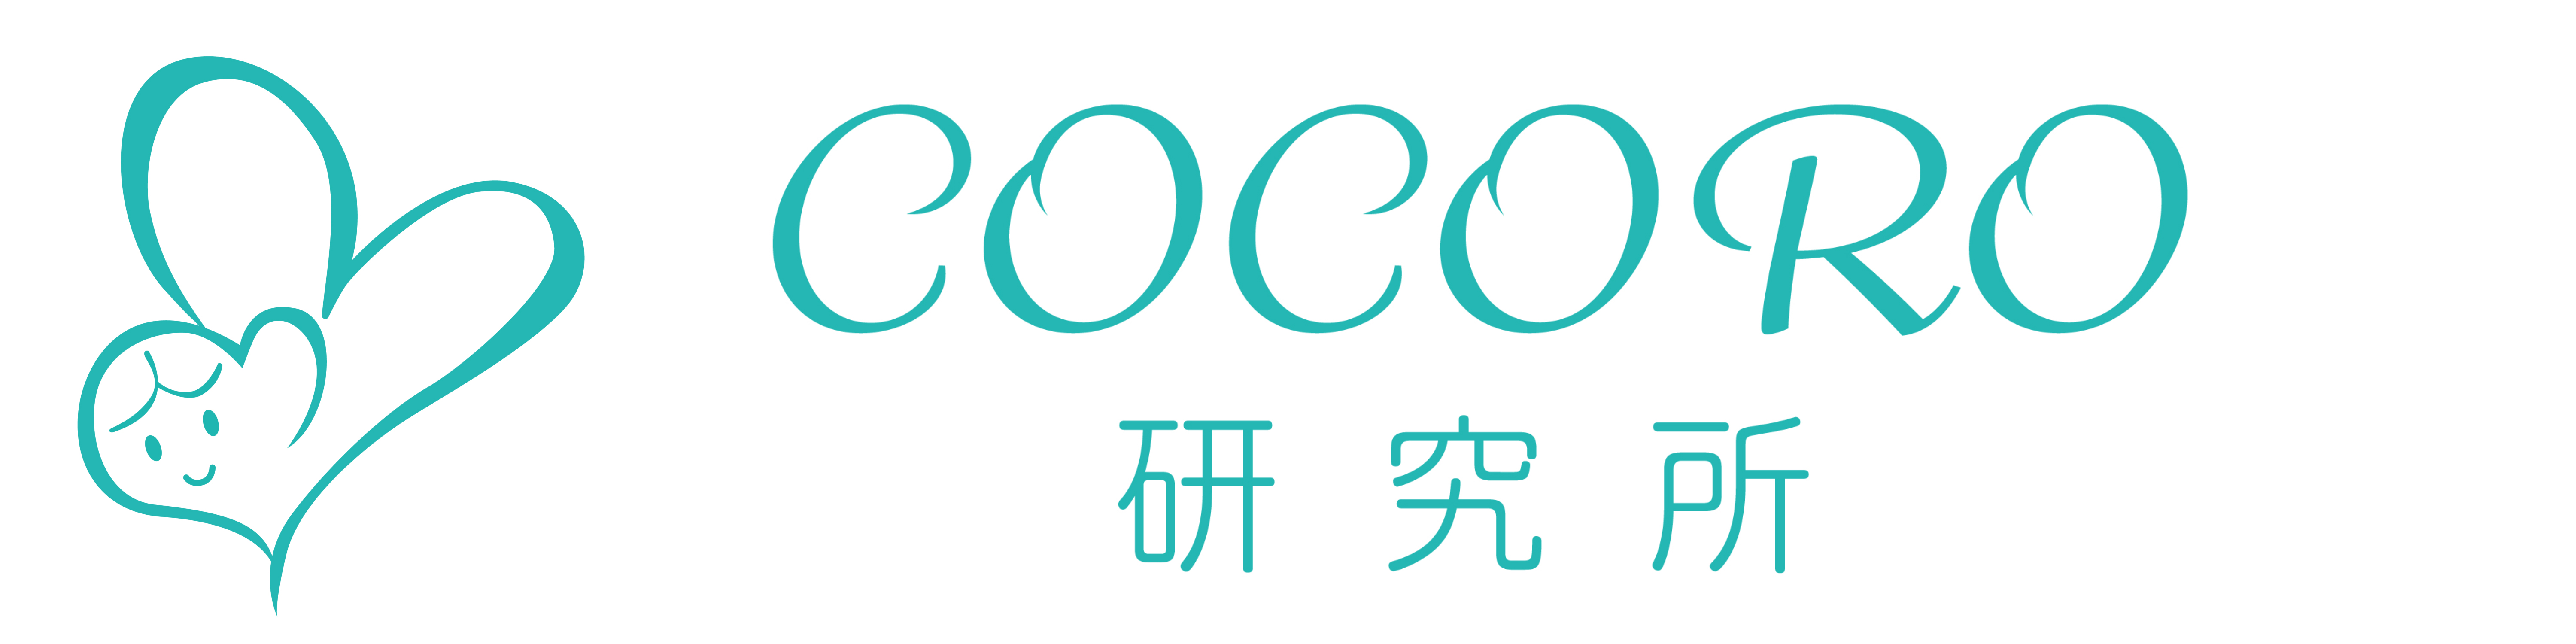 COCORO研究所